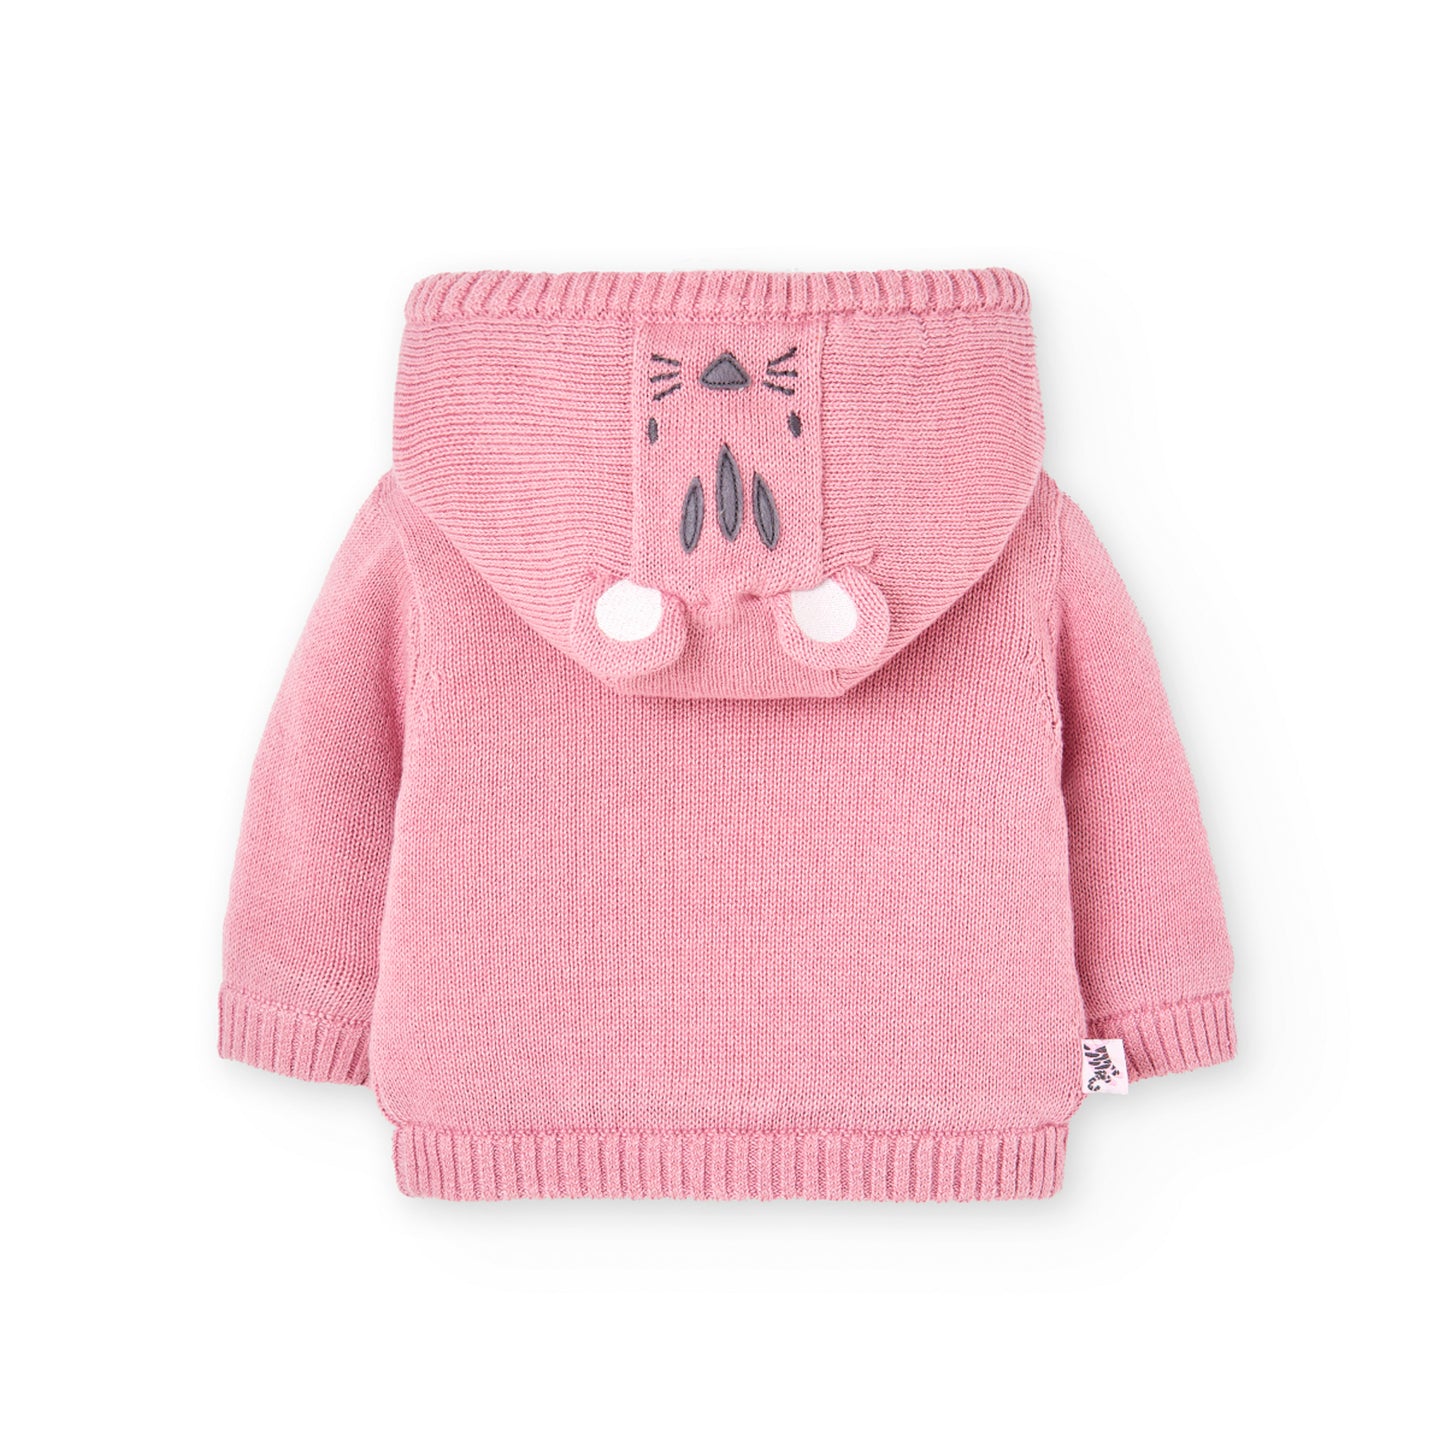 Sweater Abrigado Boboli Leopardo Rosa